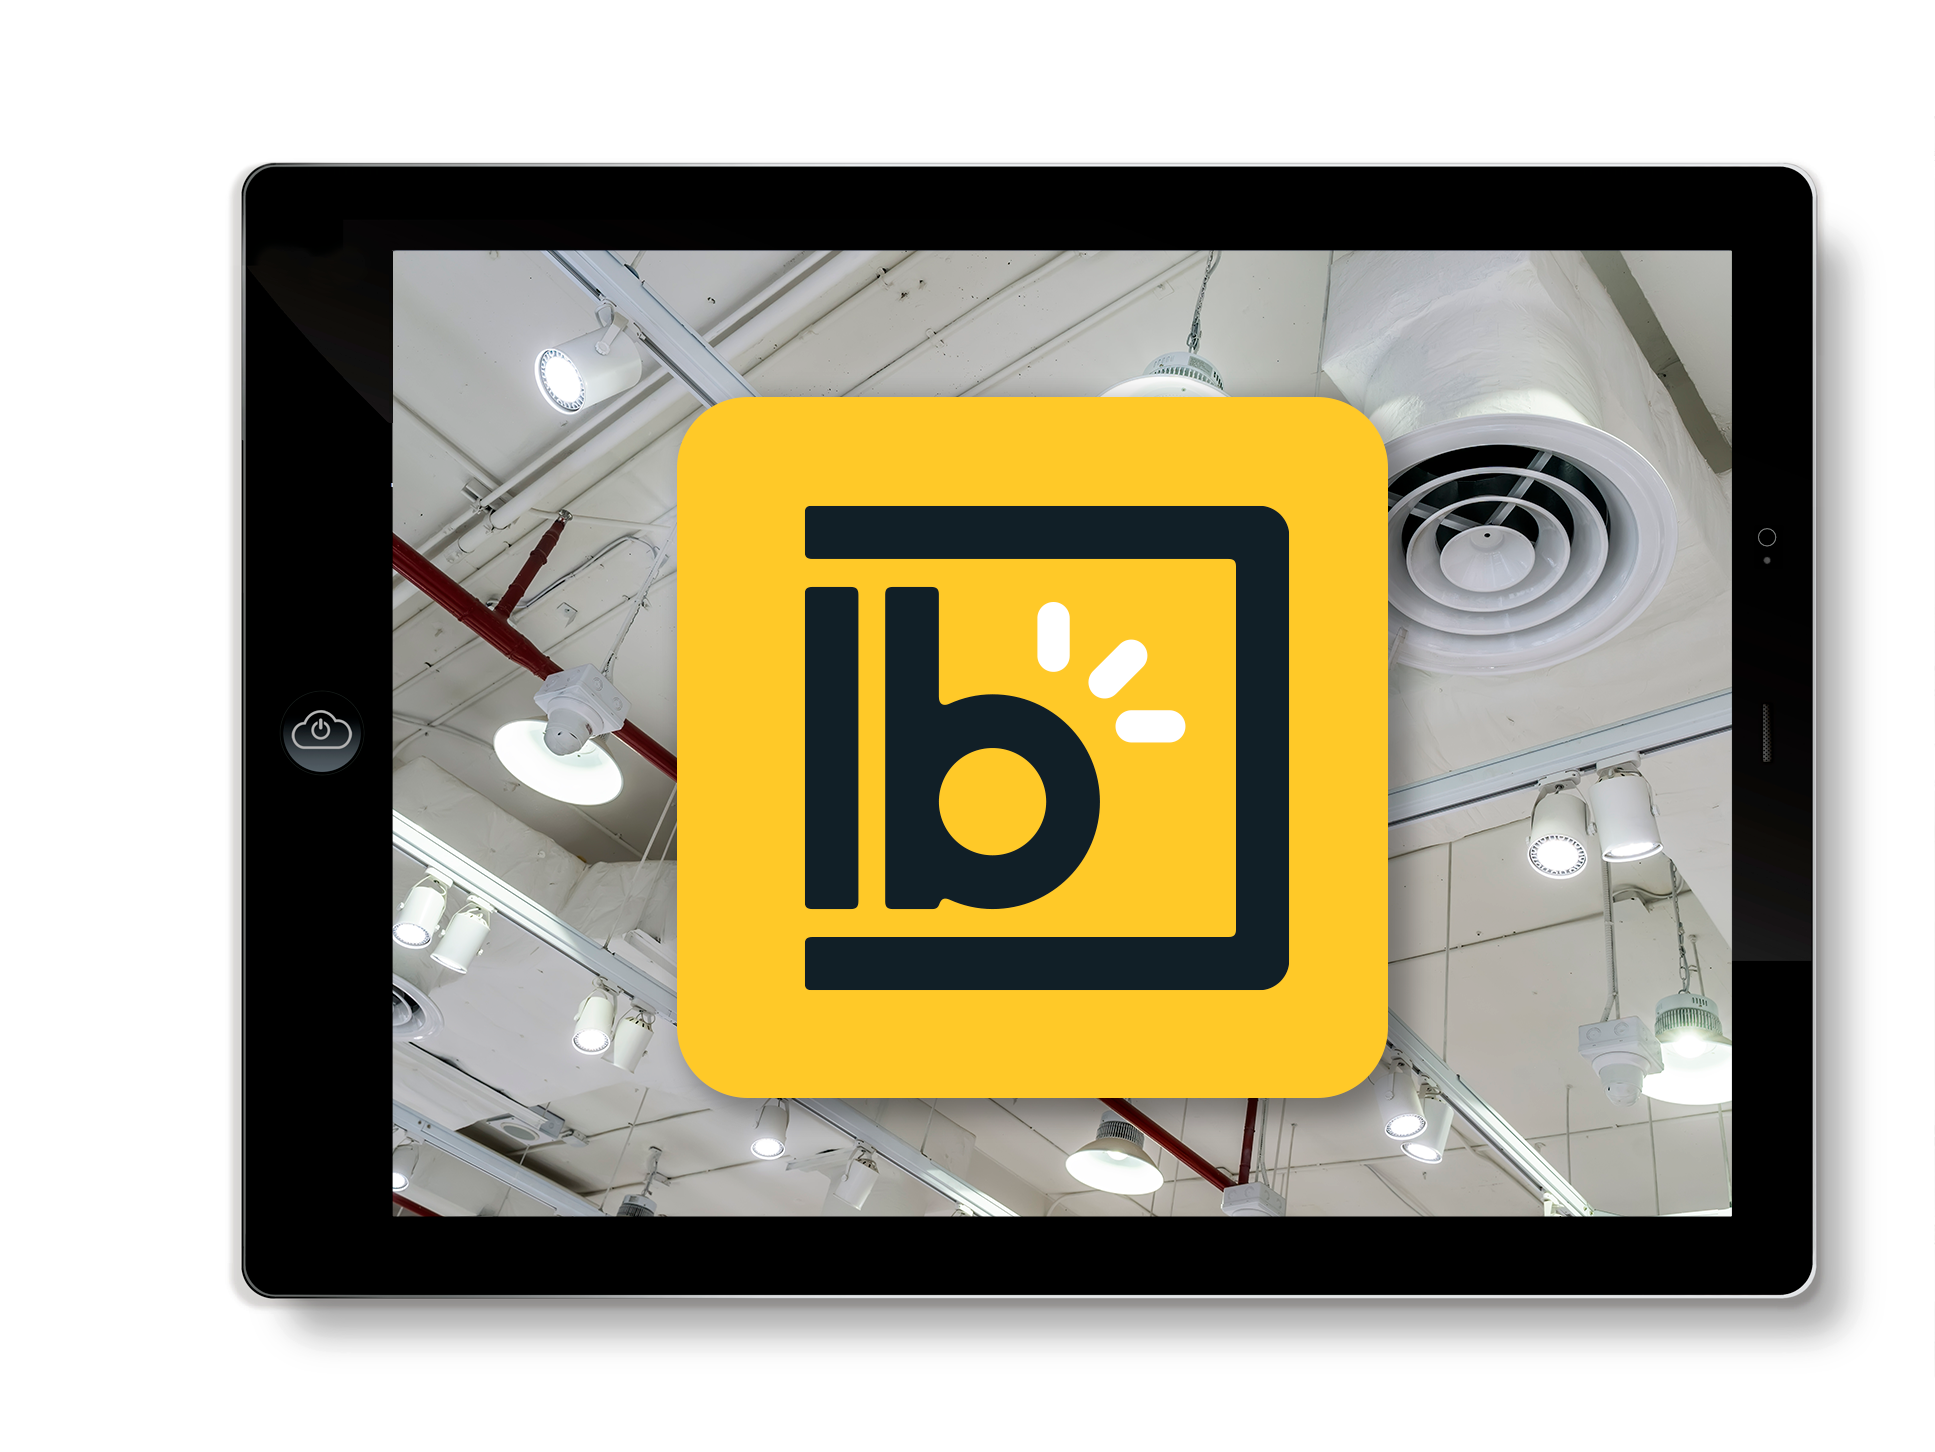 Luminaire Broker logo viewed on an iPad